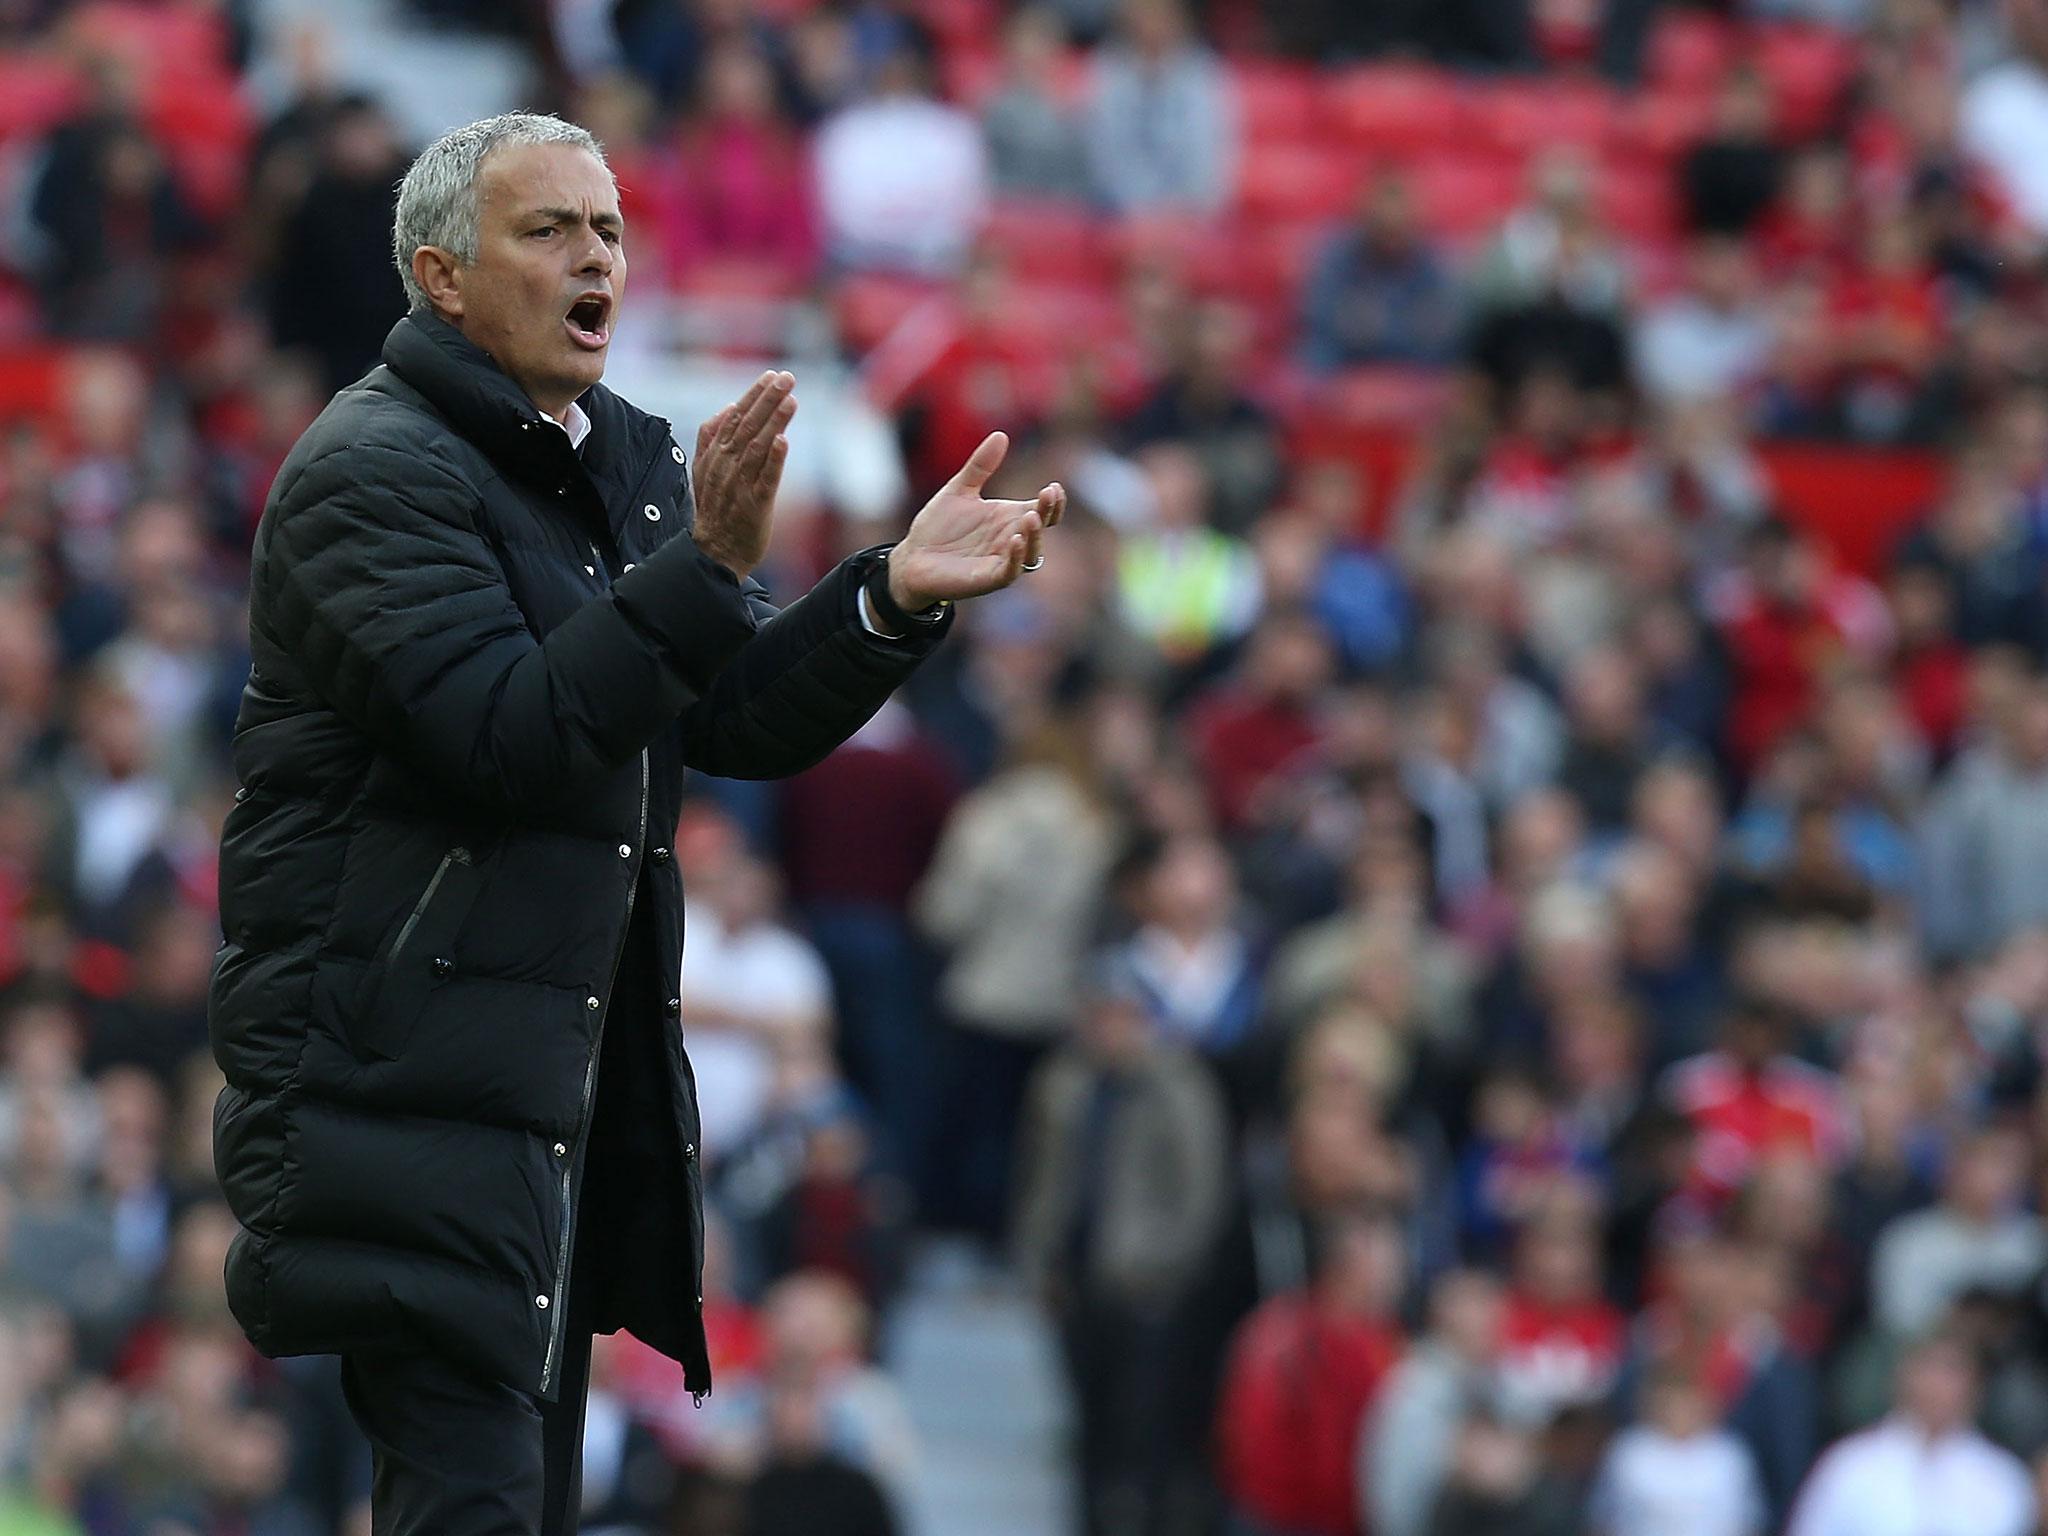 Jose Mourinho applauds his team's defensive discipline